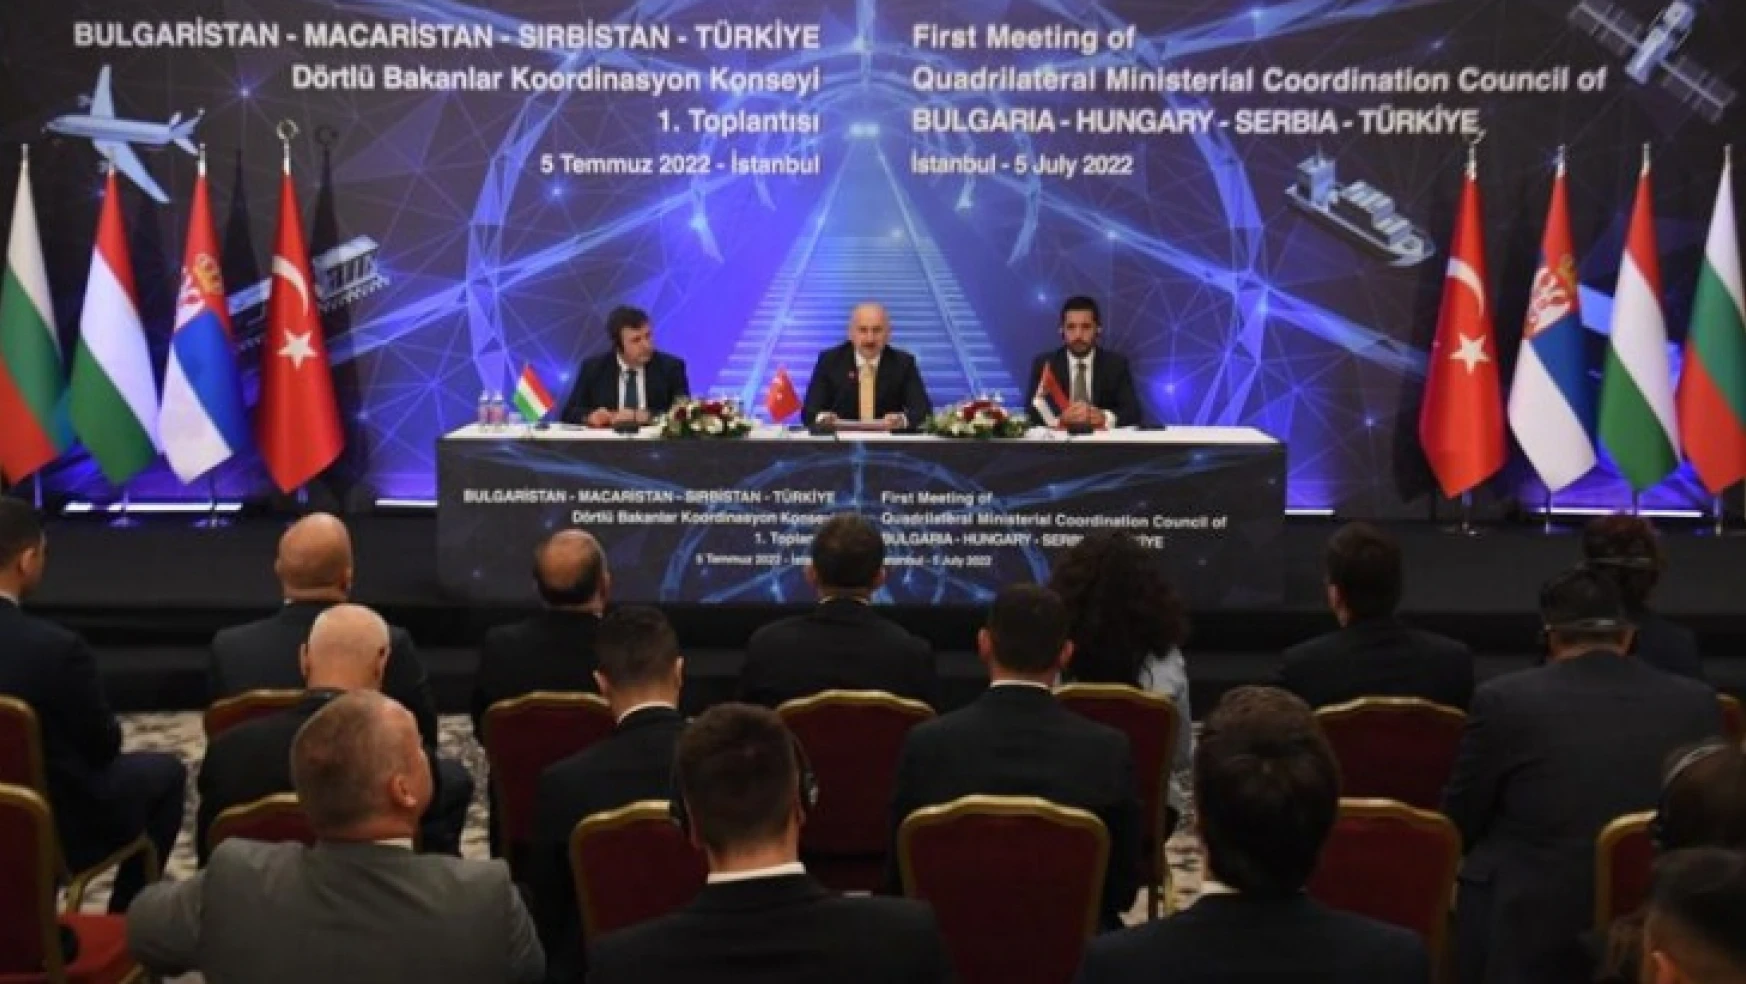 Türkiye Dörtlü Bakanlar Koordinasyon Konseyi toplantısına katıldı.